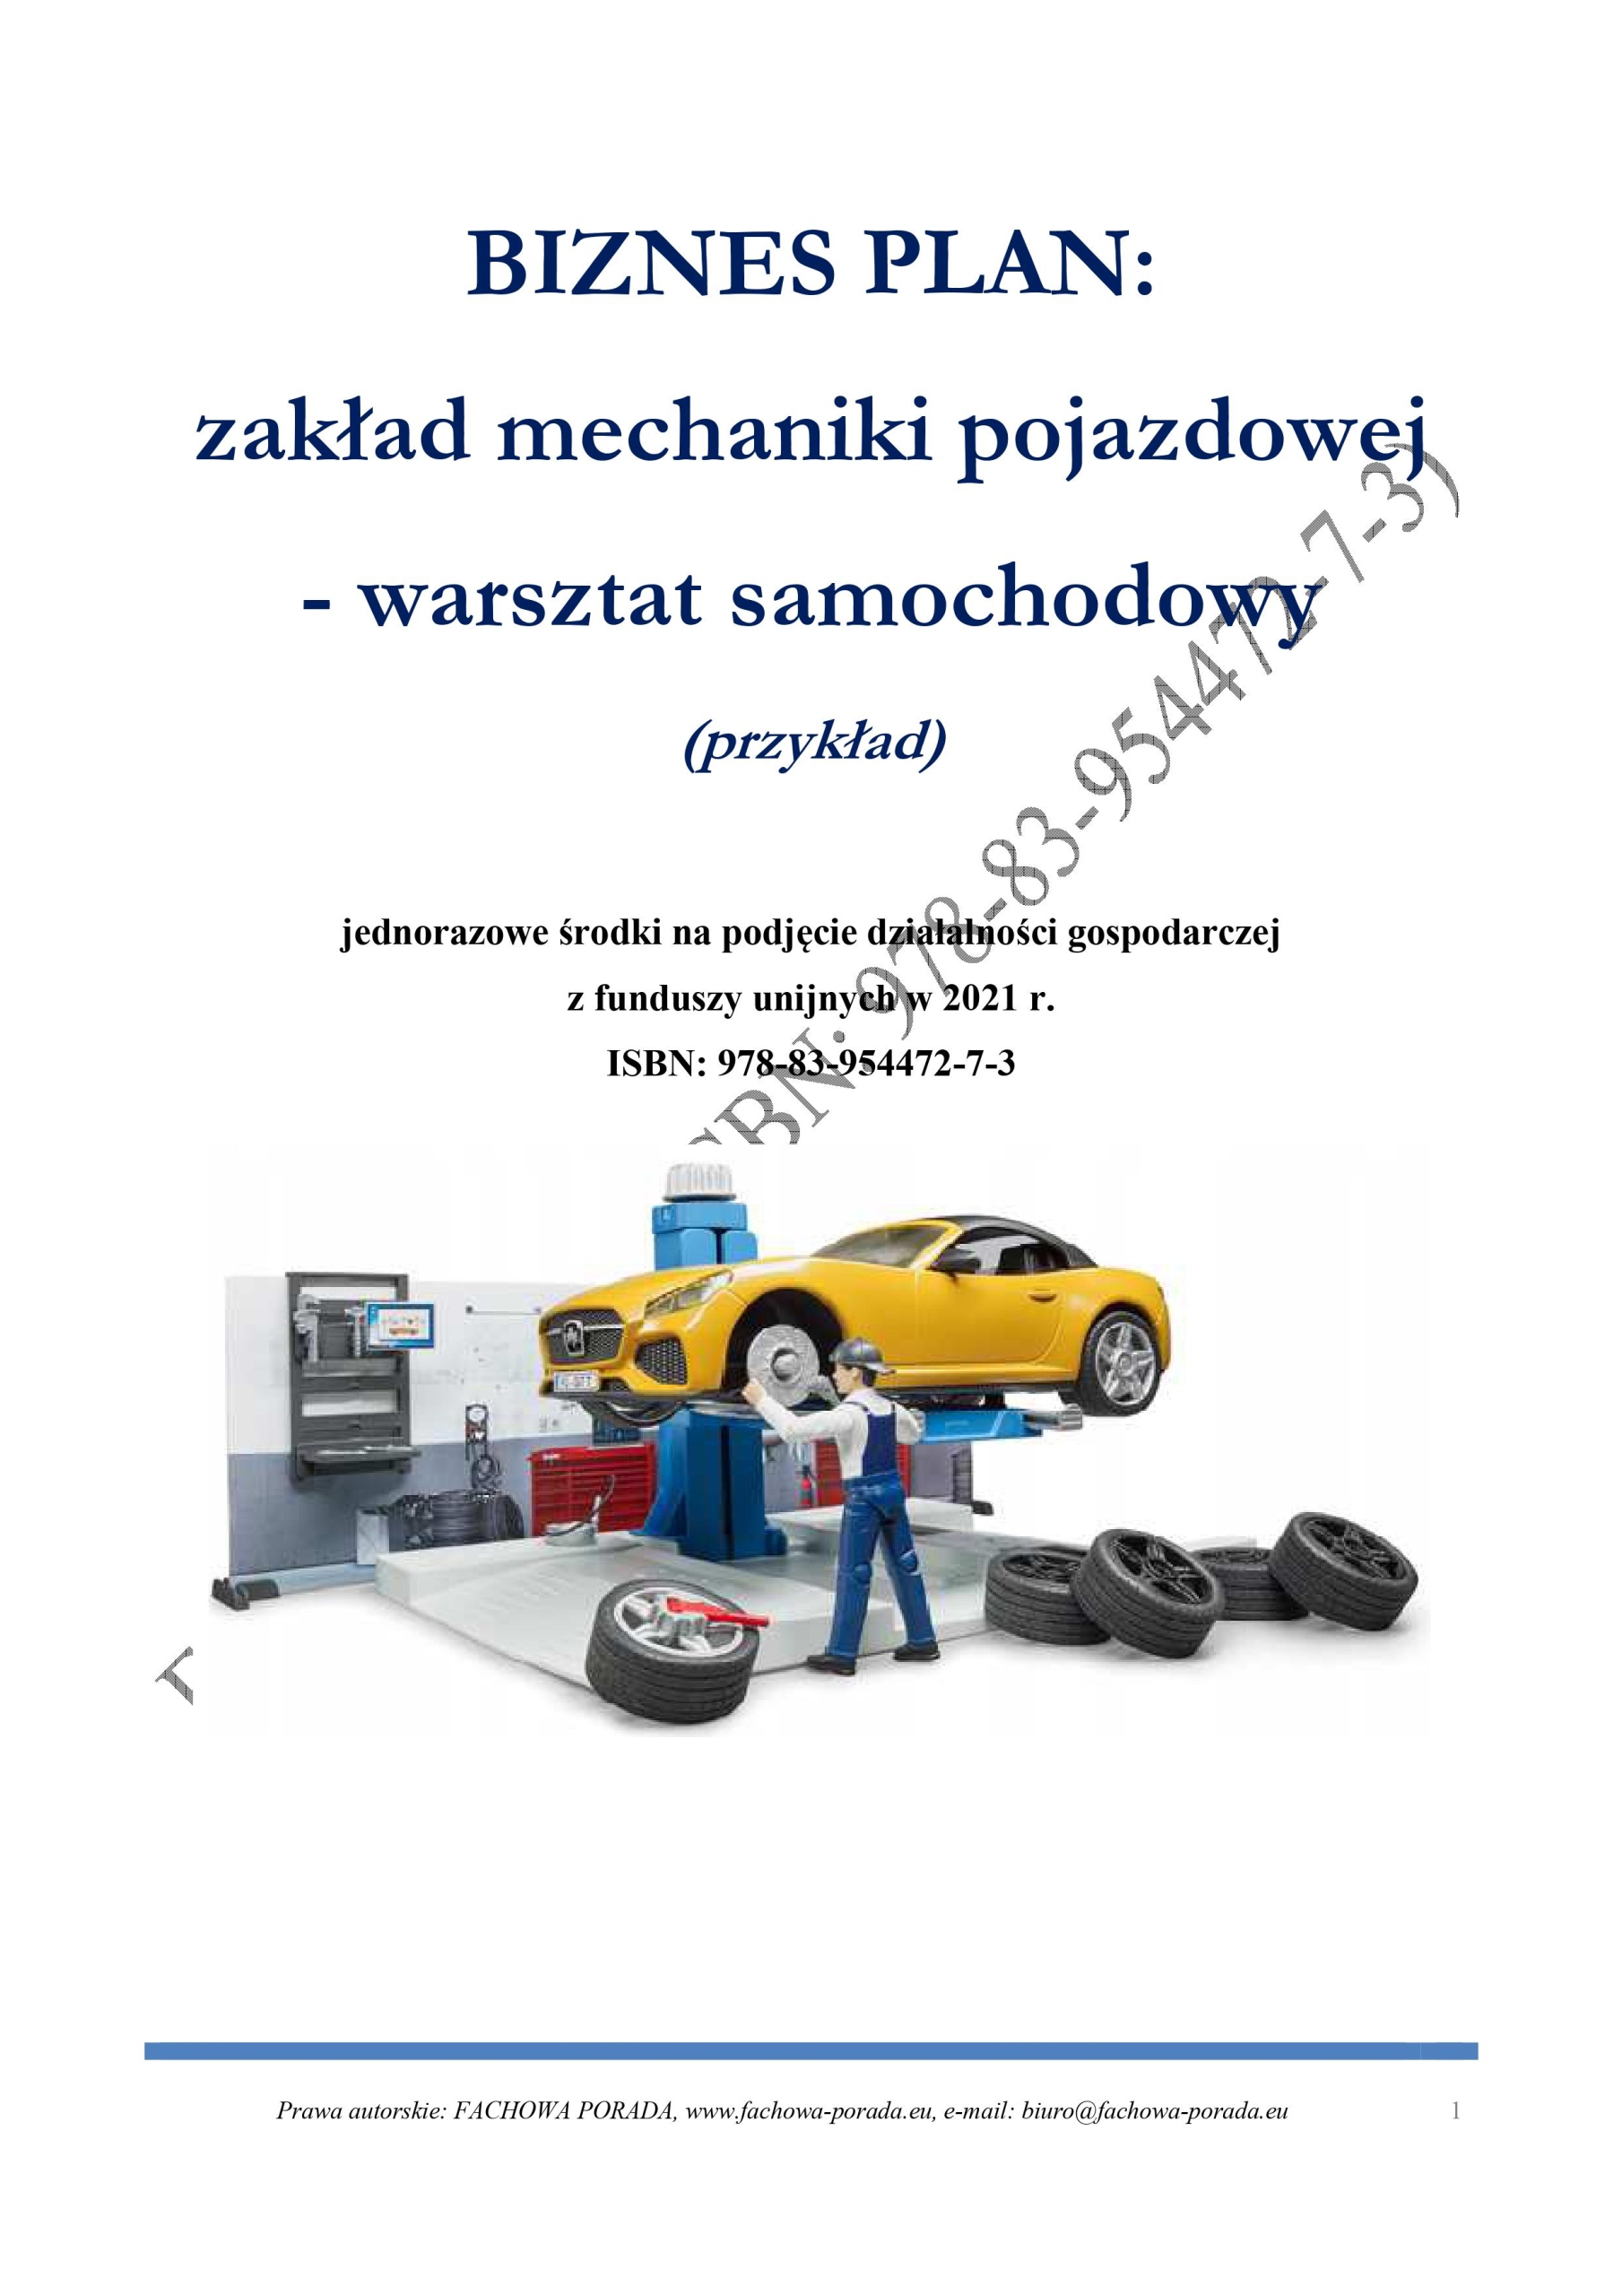 Biznesplan Warsztat Samochodowy 2021 (Przykład) - 39,90 Zł - Allegro.pl - Raty 0%, Darmowa Dostawa Ze Smart! - Brwinów - Id Oferty: 10849473439